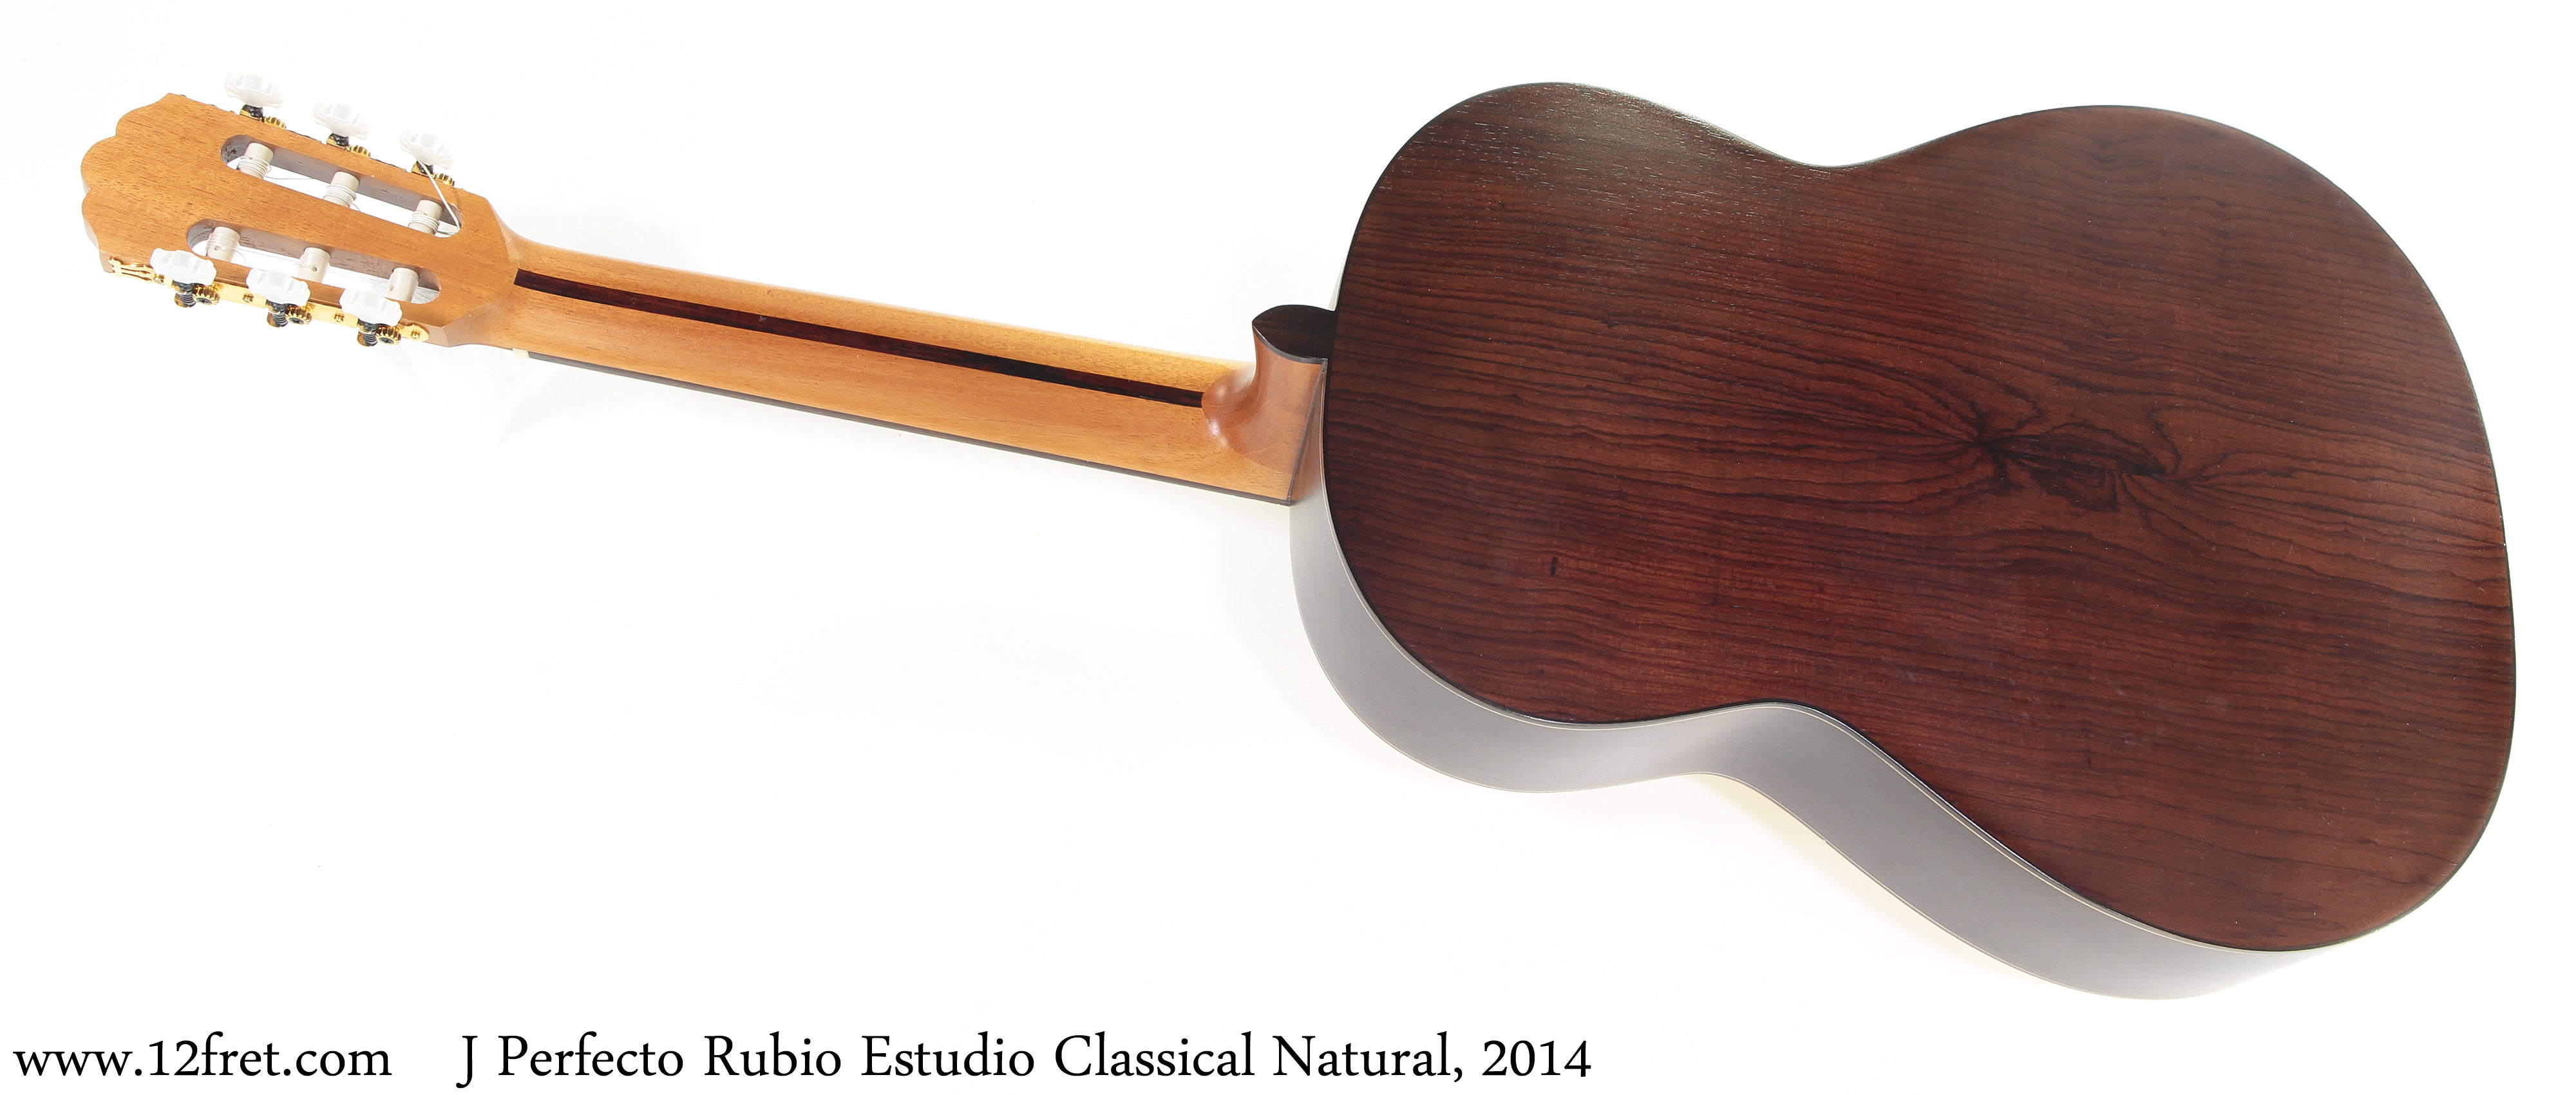 J Perfecto Rubio Estudio Classical Natural, 2014 - The Twelfth Fret